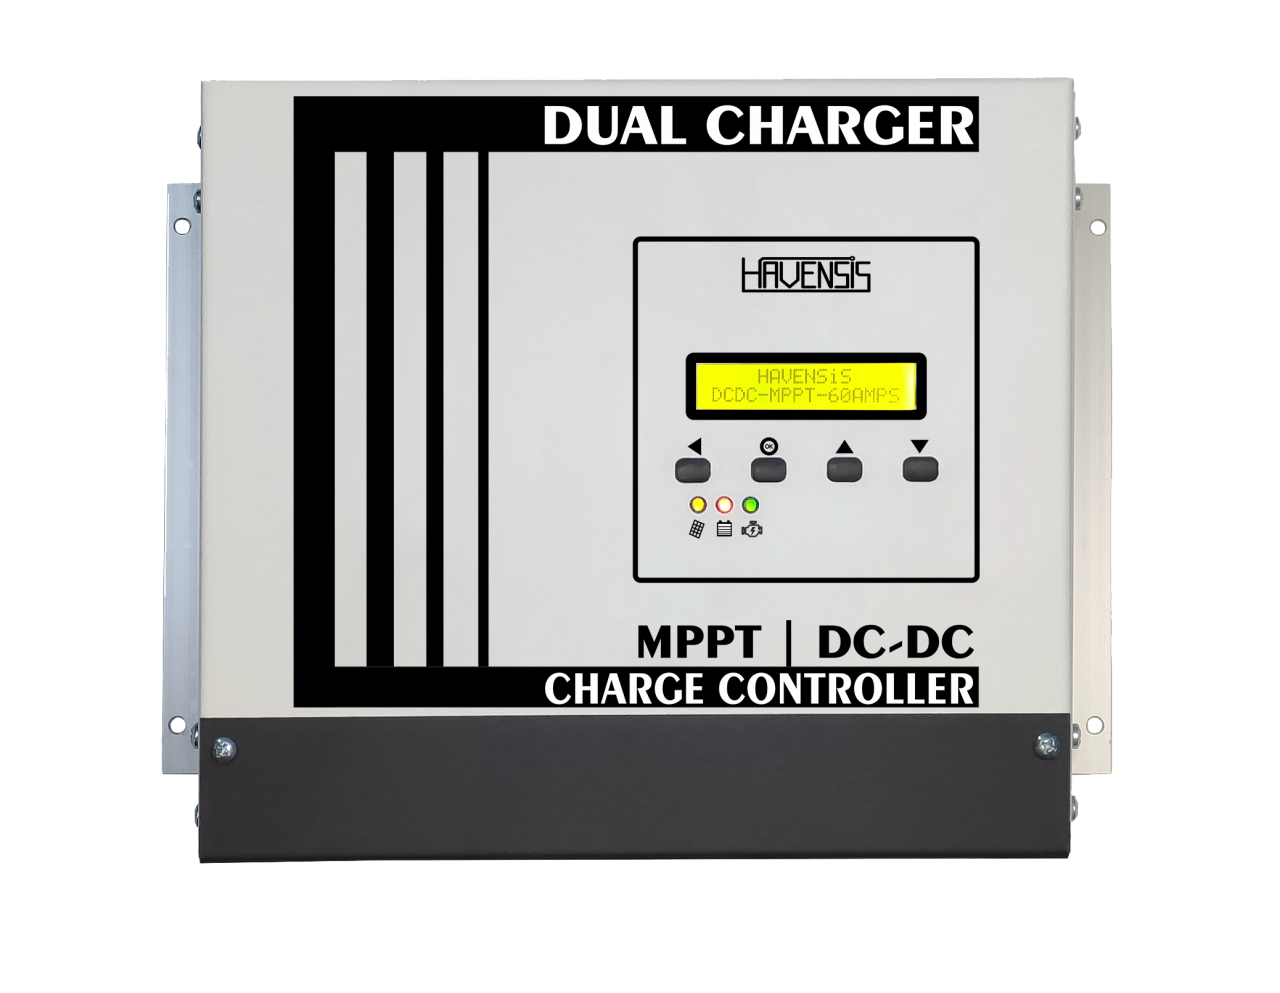 Havensis Tümleşik Şarj Kontrol (Dual Charger) MPPT/DC-DC